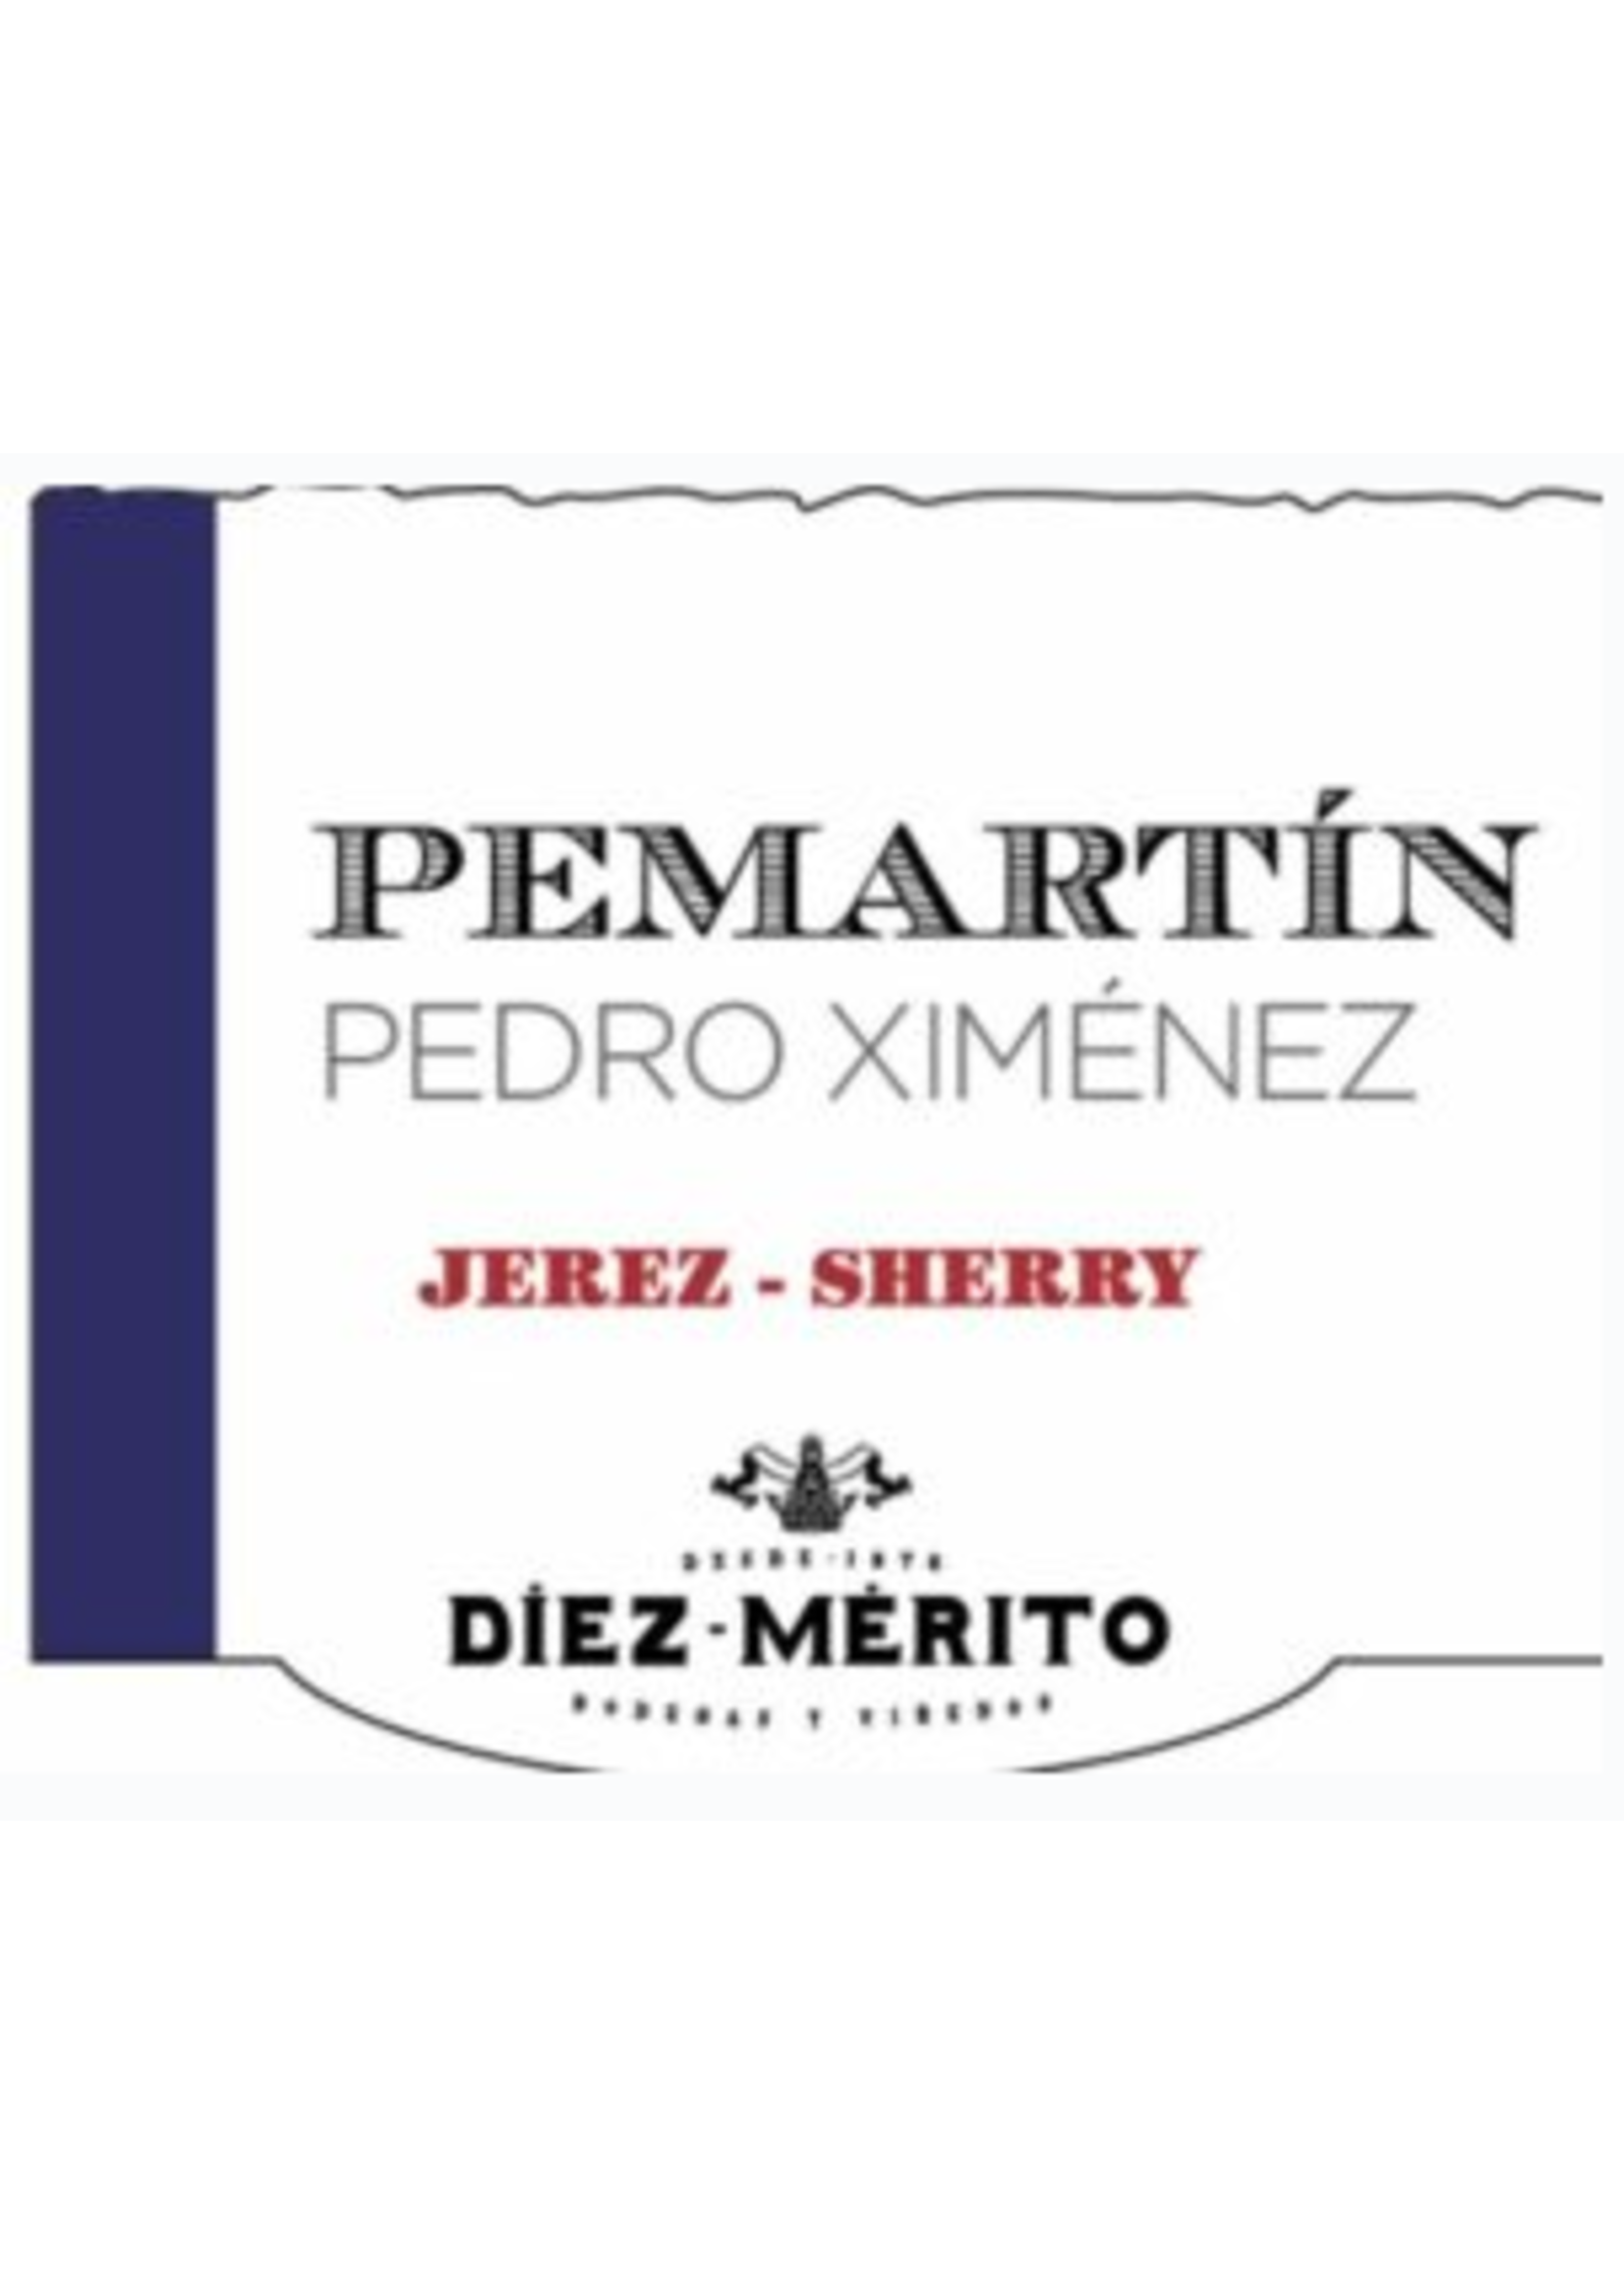 Sherry- Diez-Merito Permatin- Pedro Ximenez